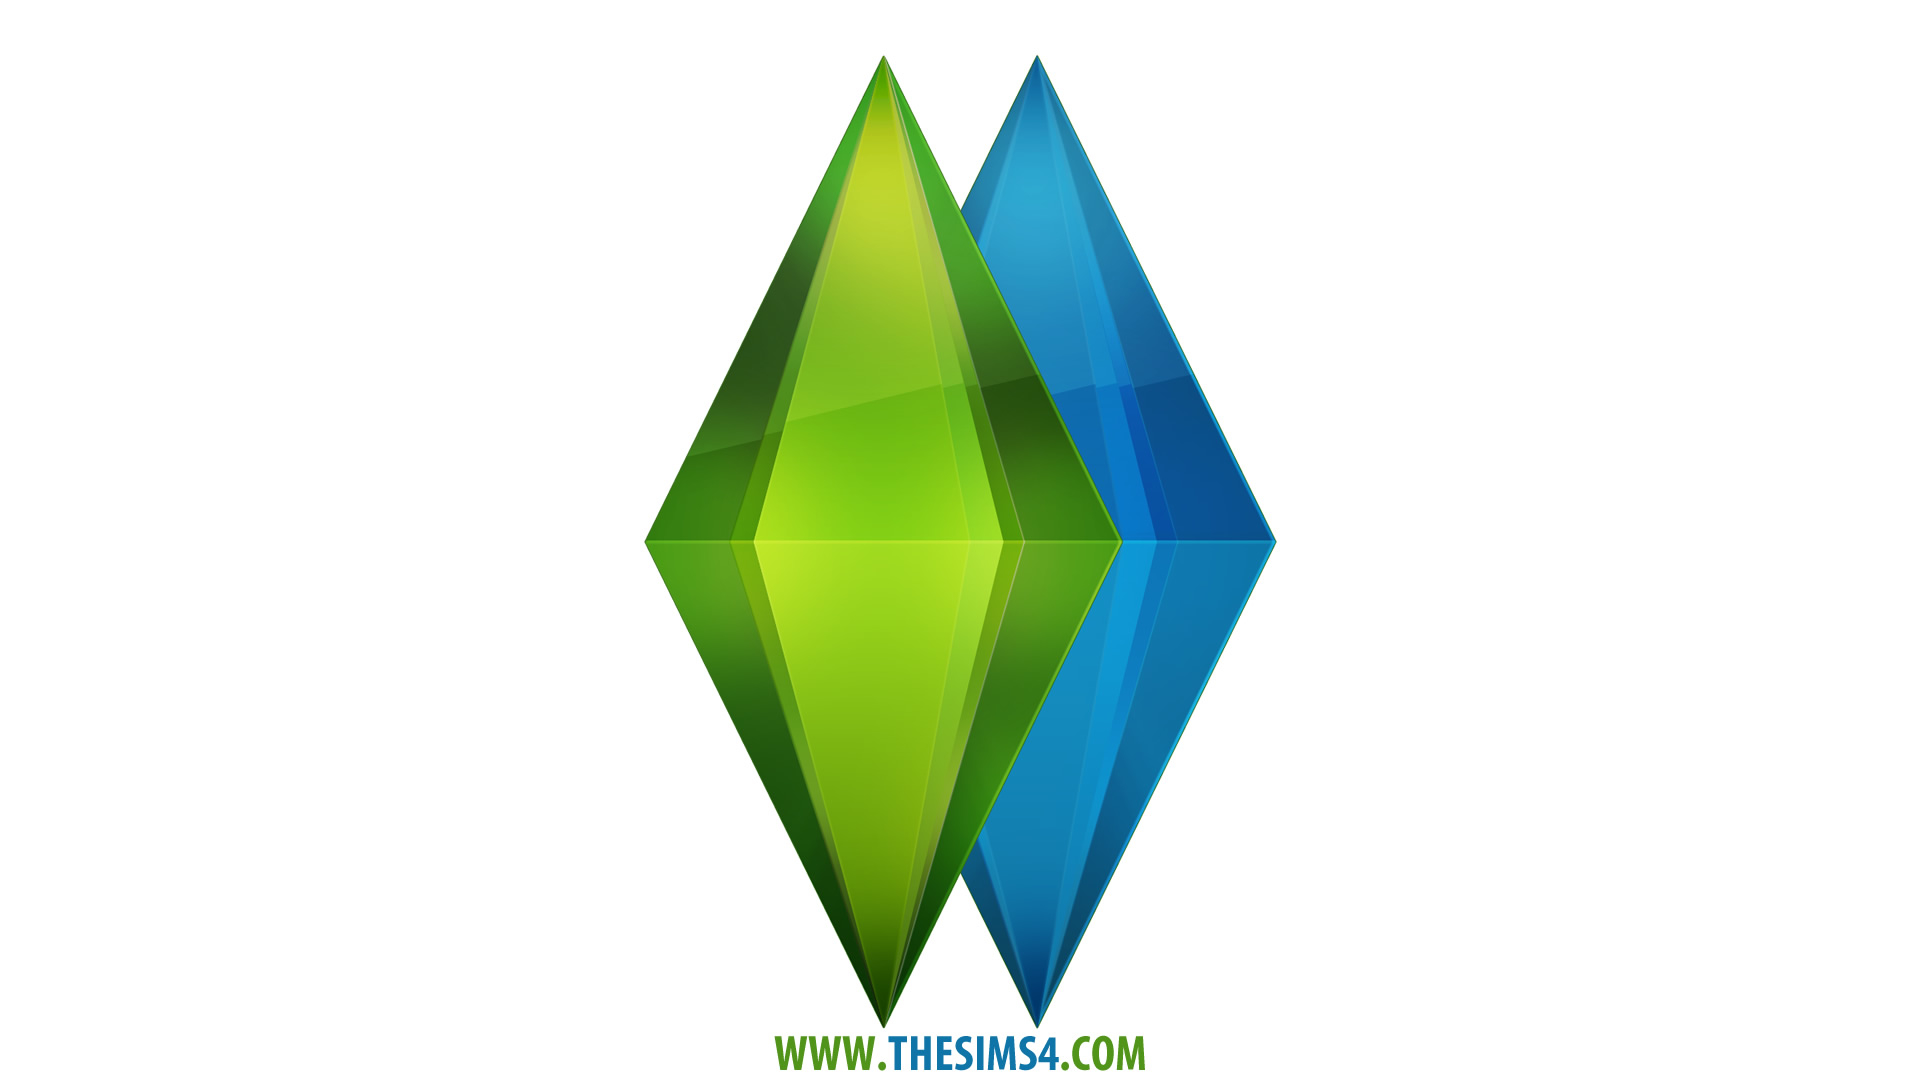 Sims 4 full. free download mac games